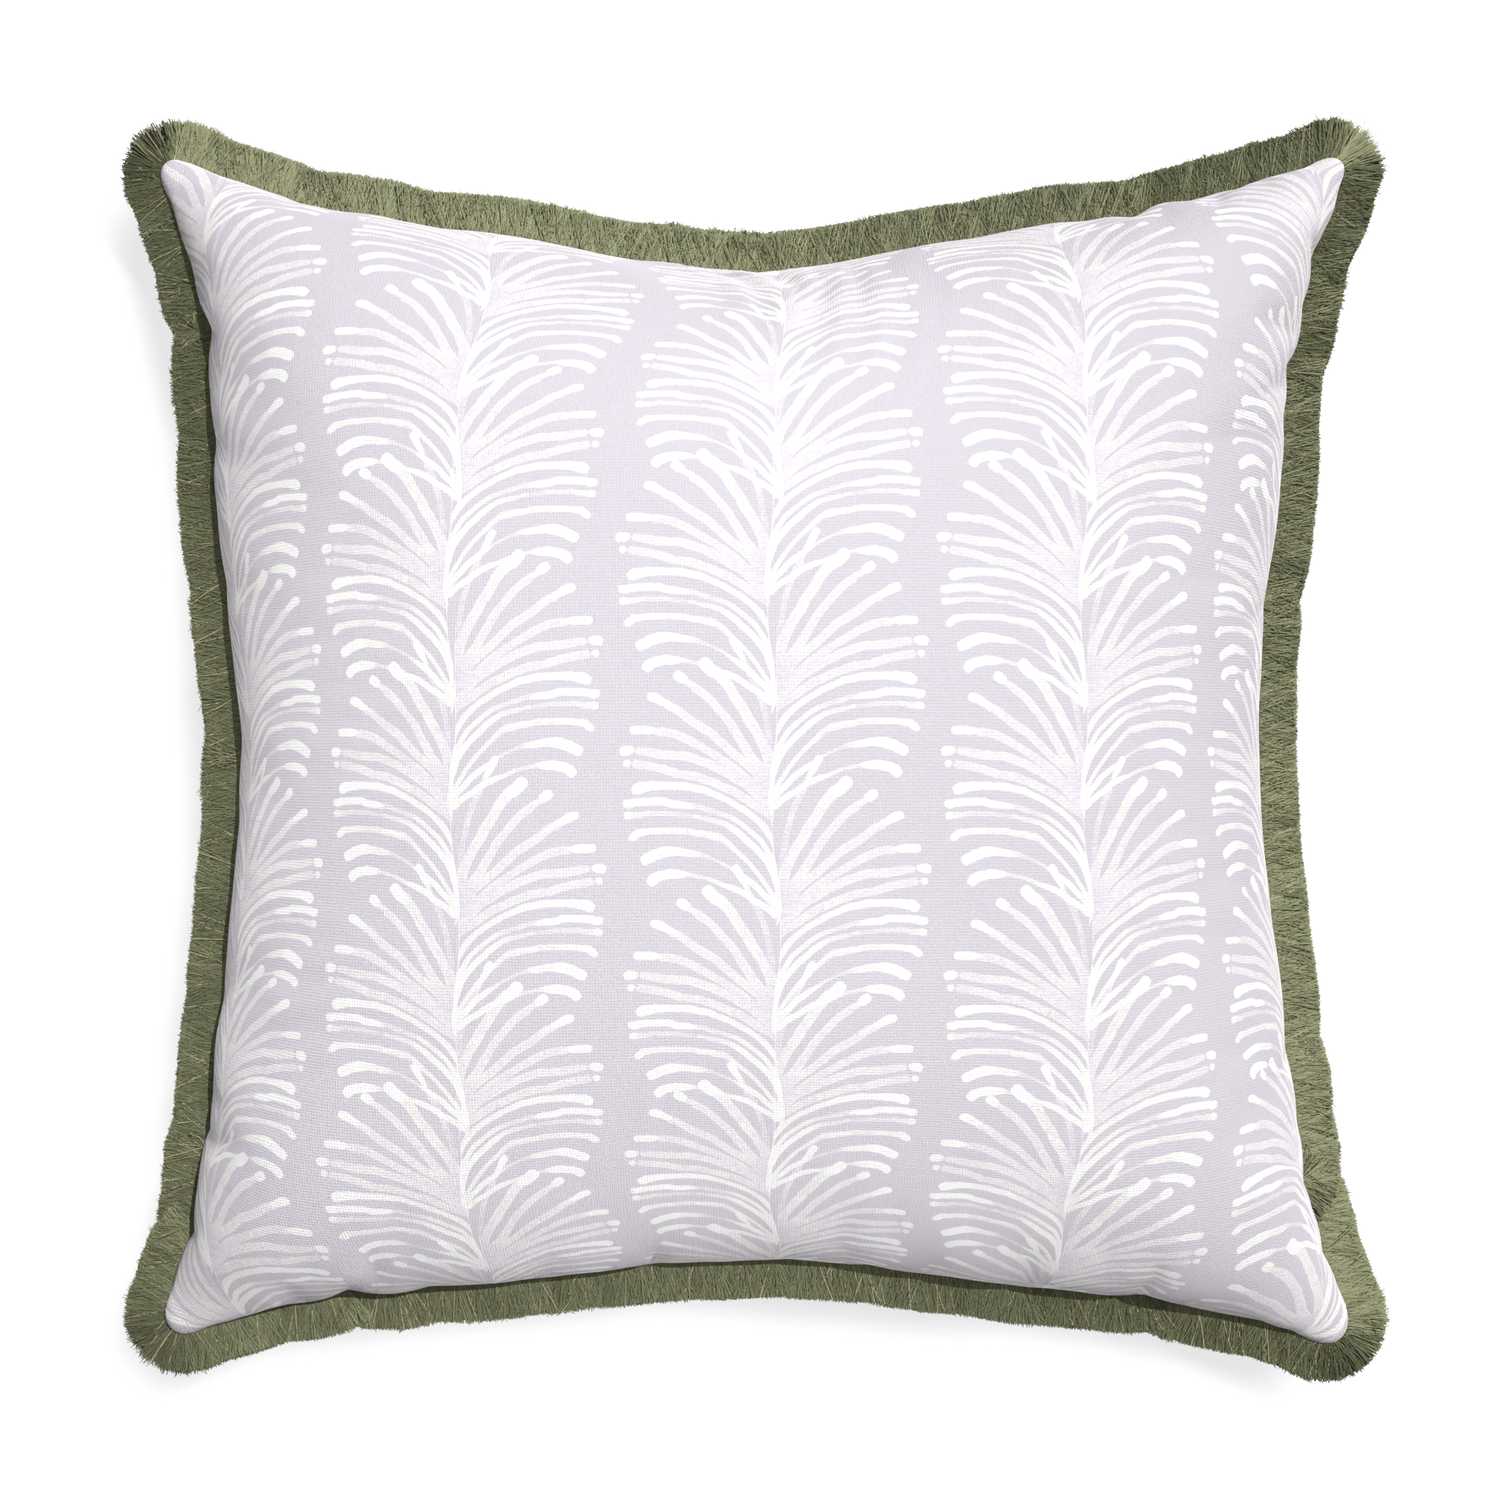 Euro-sham emma lavender custom pillow with sage fringe on white background